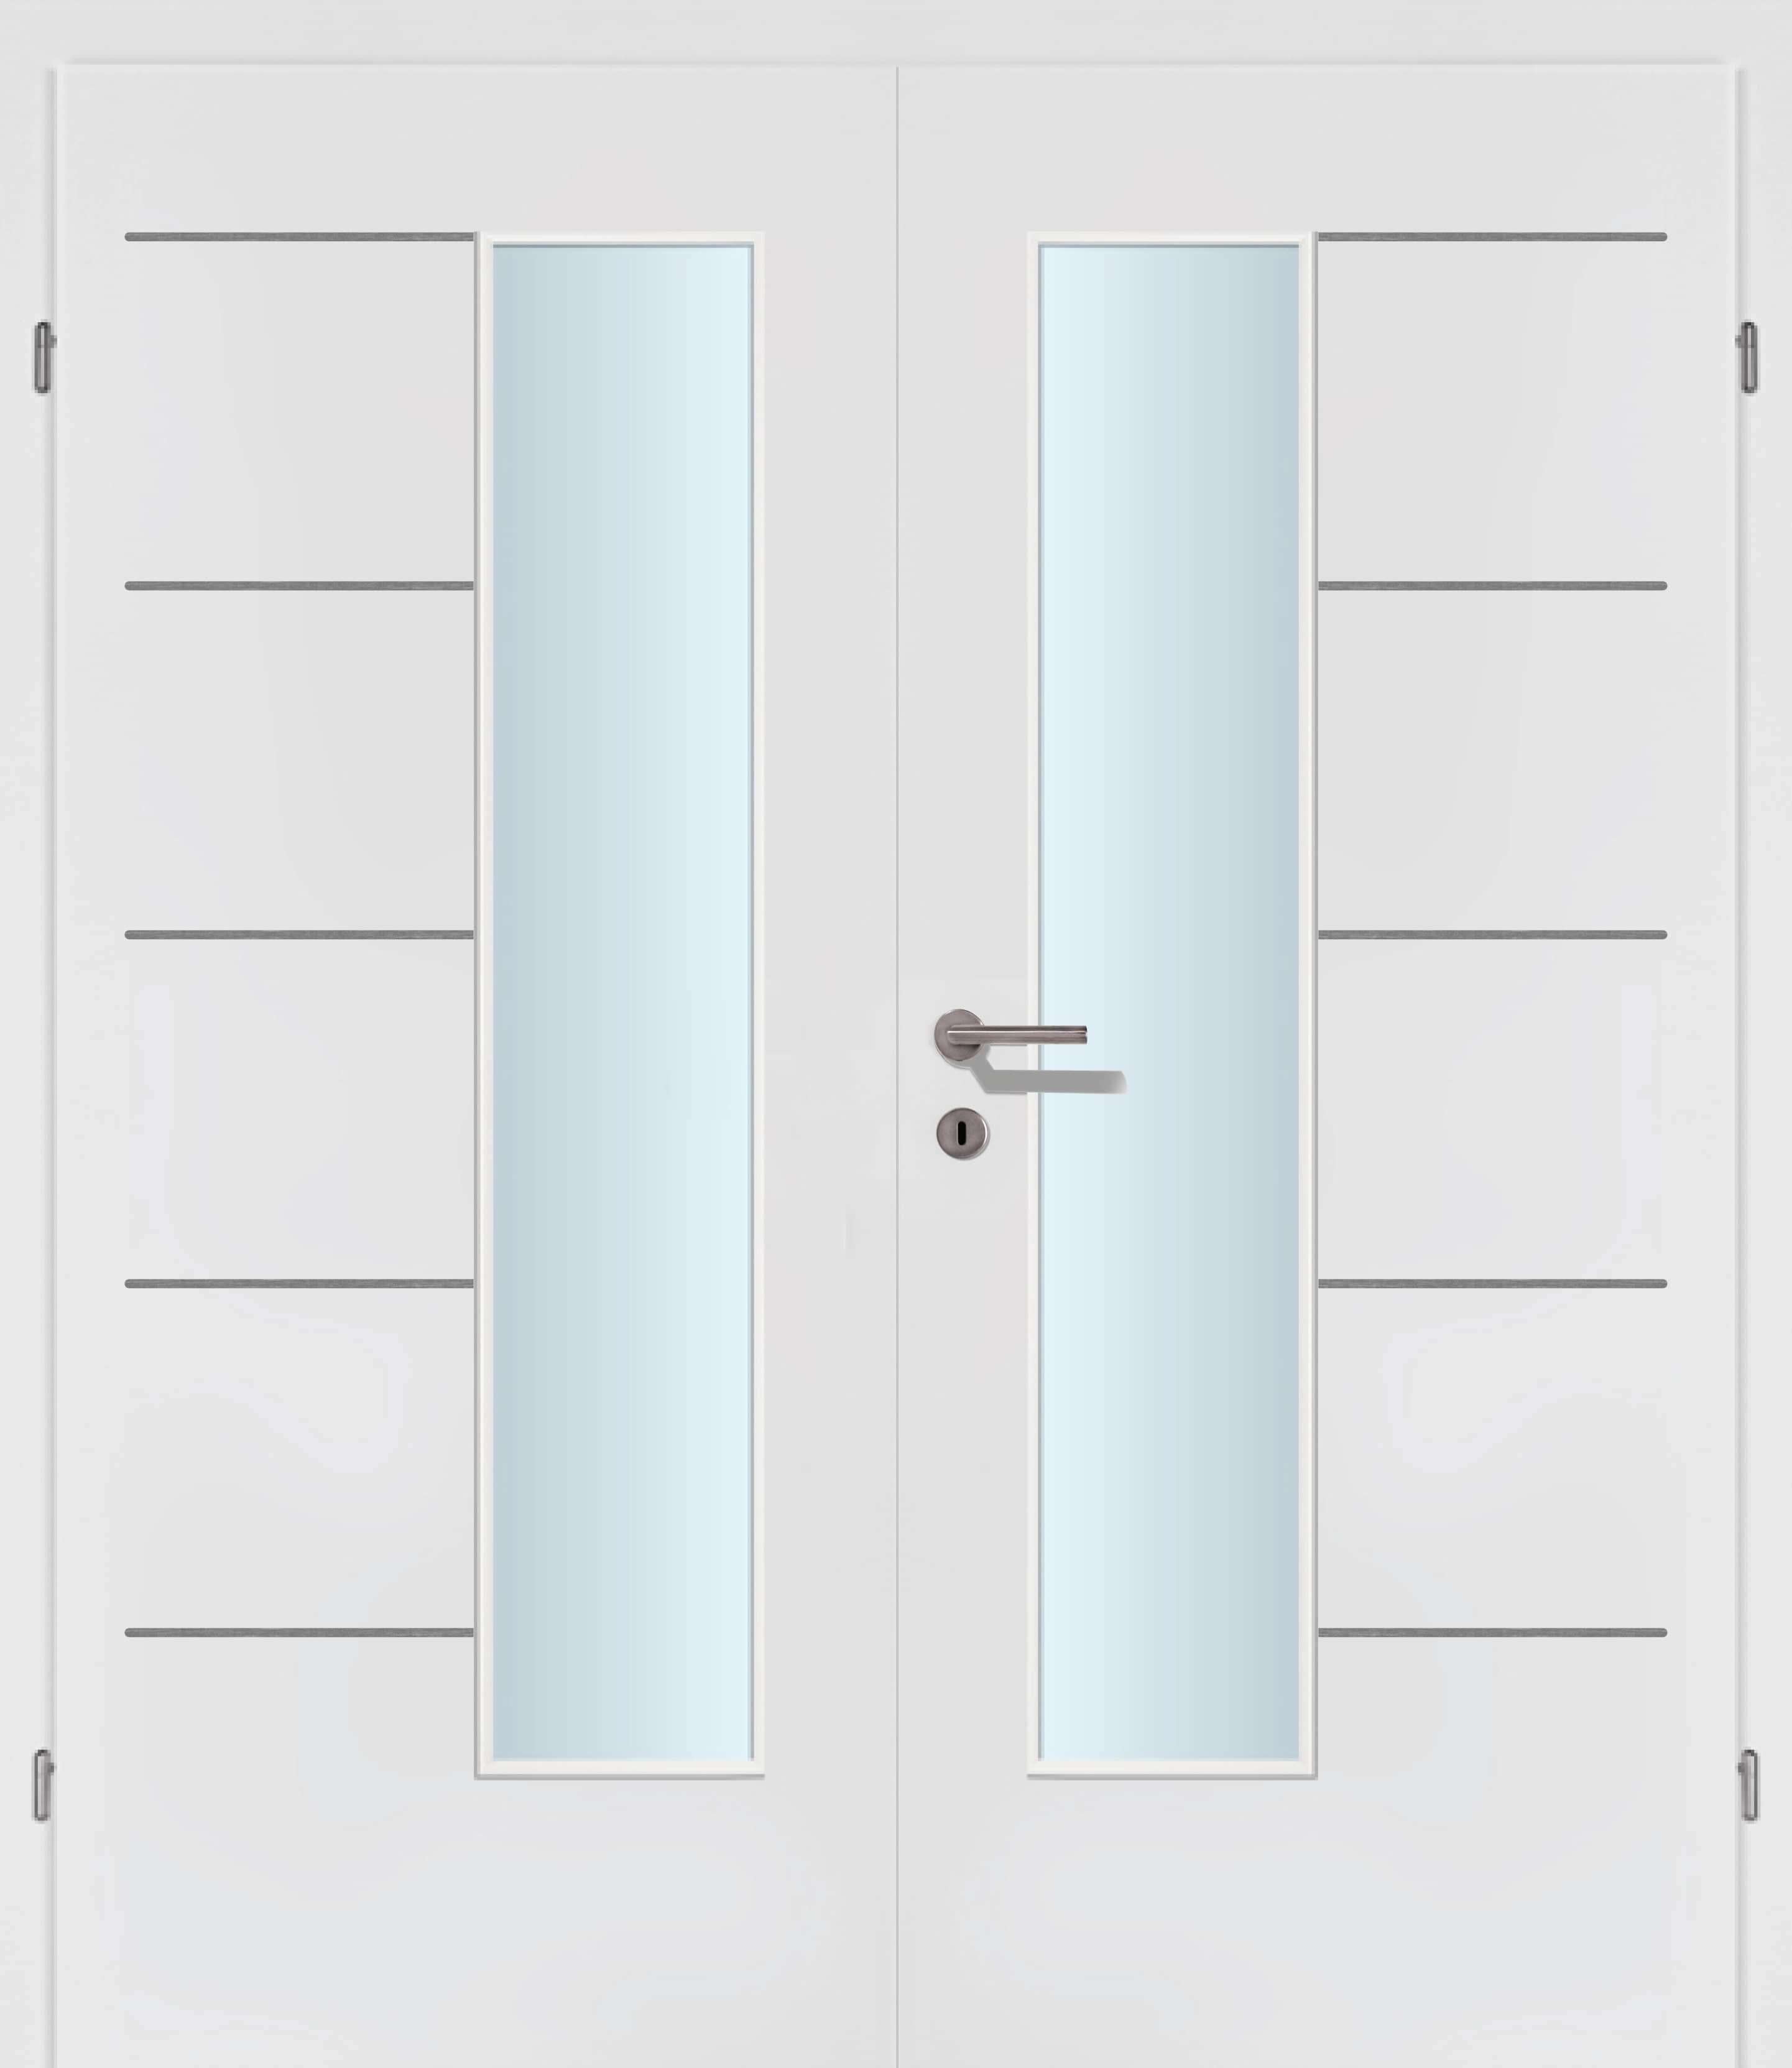 Selektion T48 Alu Effekt Lisenen weiss Innentür Inkl. Zarge (Türrahmen) Doppeltüre Inkl. Glaslichte EN Drückerseitig